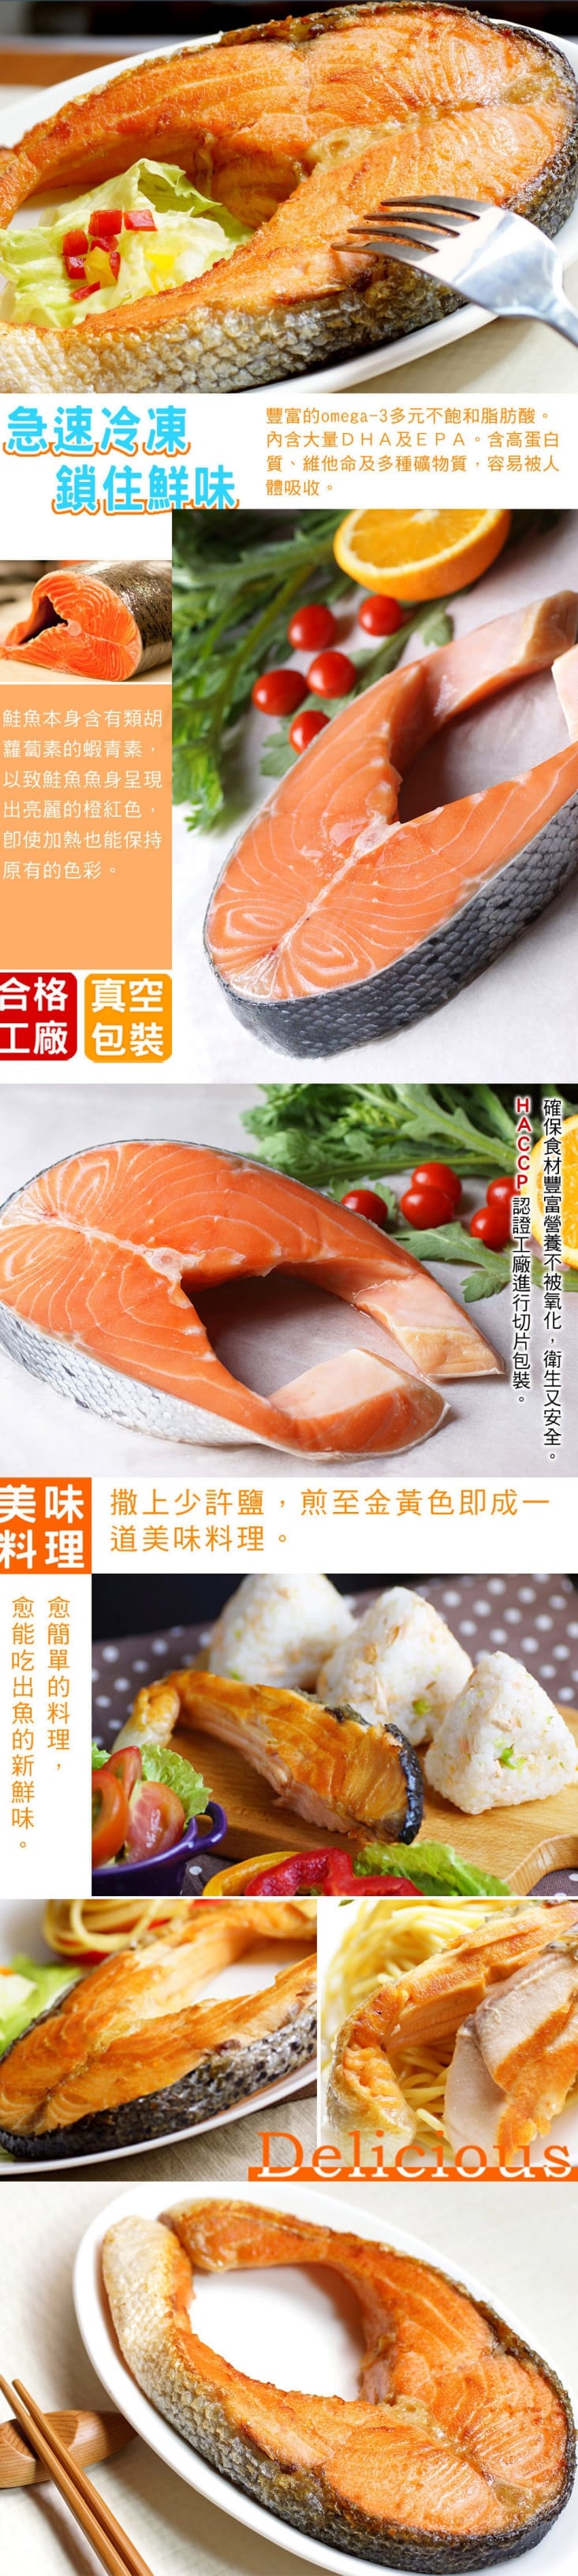 【海之醇】大規格鮭魚厚切-8包組(360g/包)